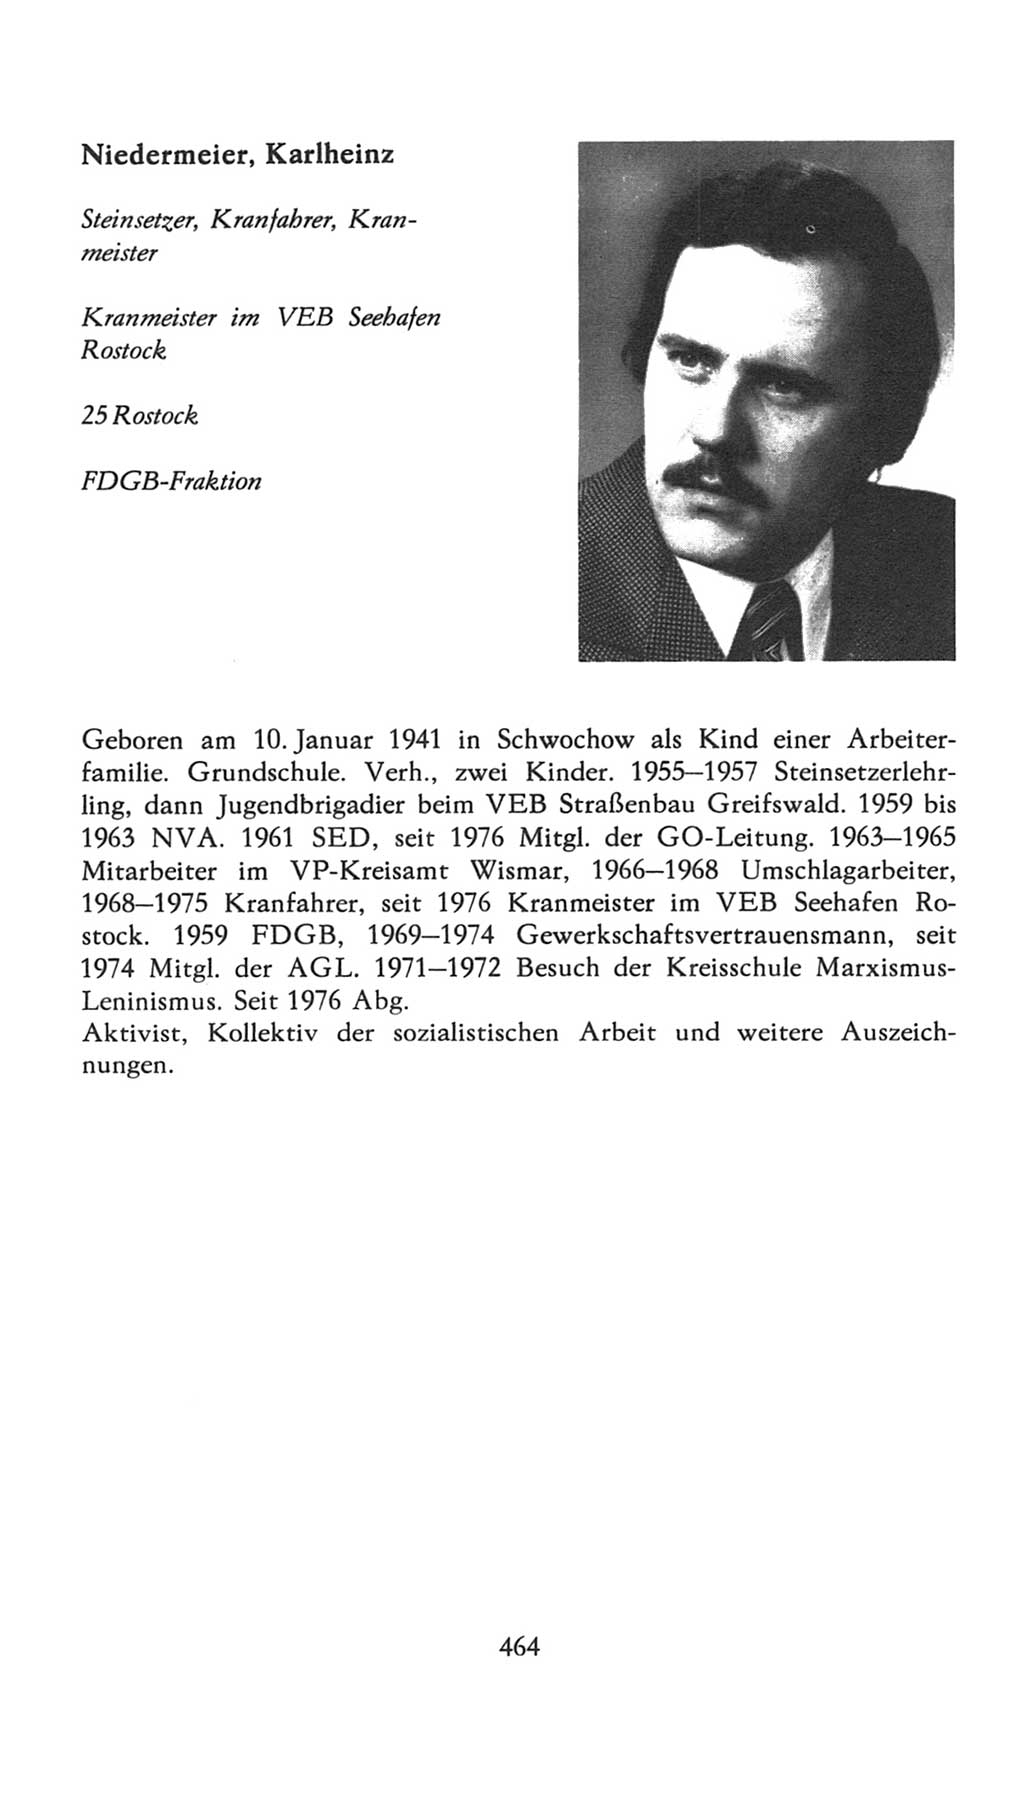 Volkskammer (VK) der Deutschen Demokratischen Republik (DDR), 7. Wahlperiode 1976-1981, Seite 464 (VK. DDR 7. WP. 1976-1981, S. 464)